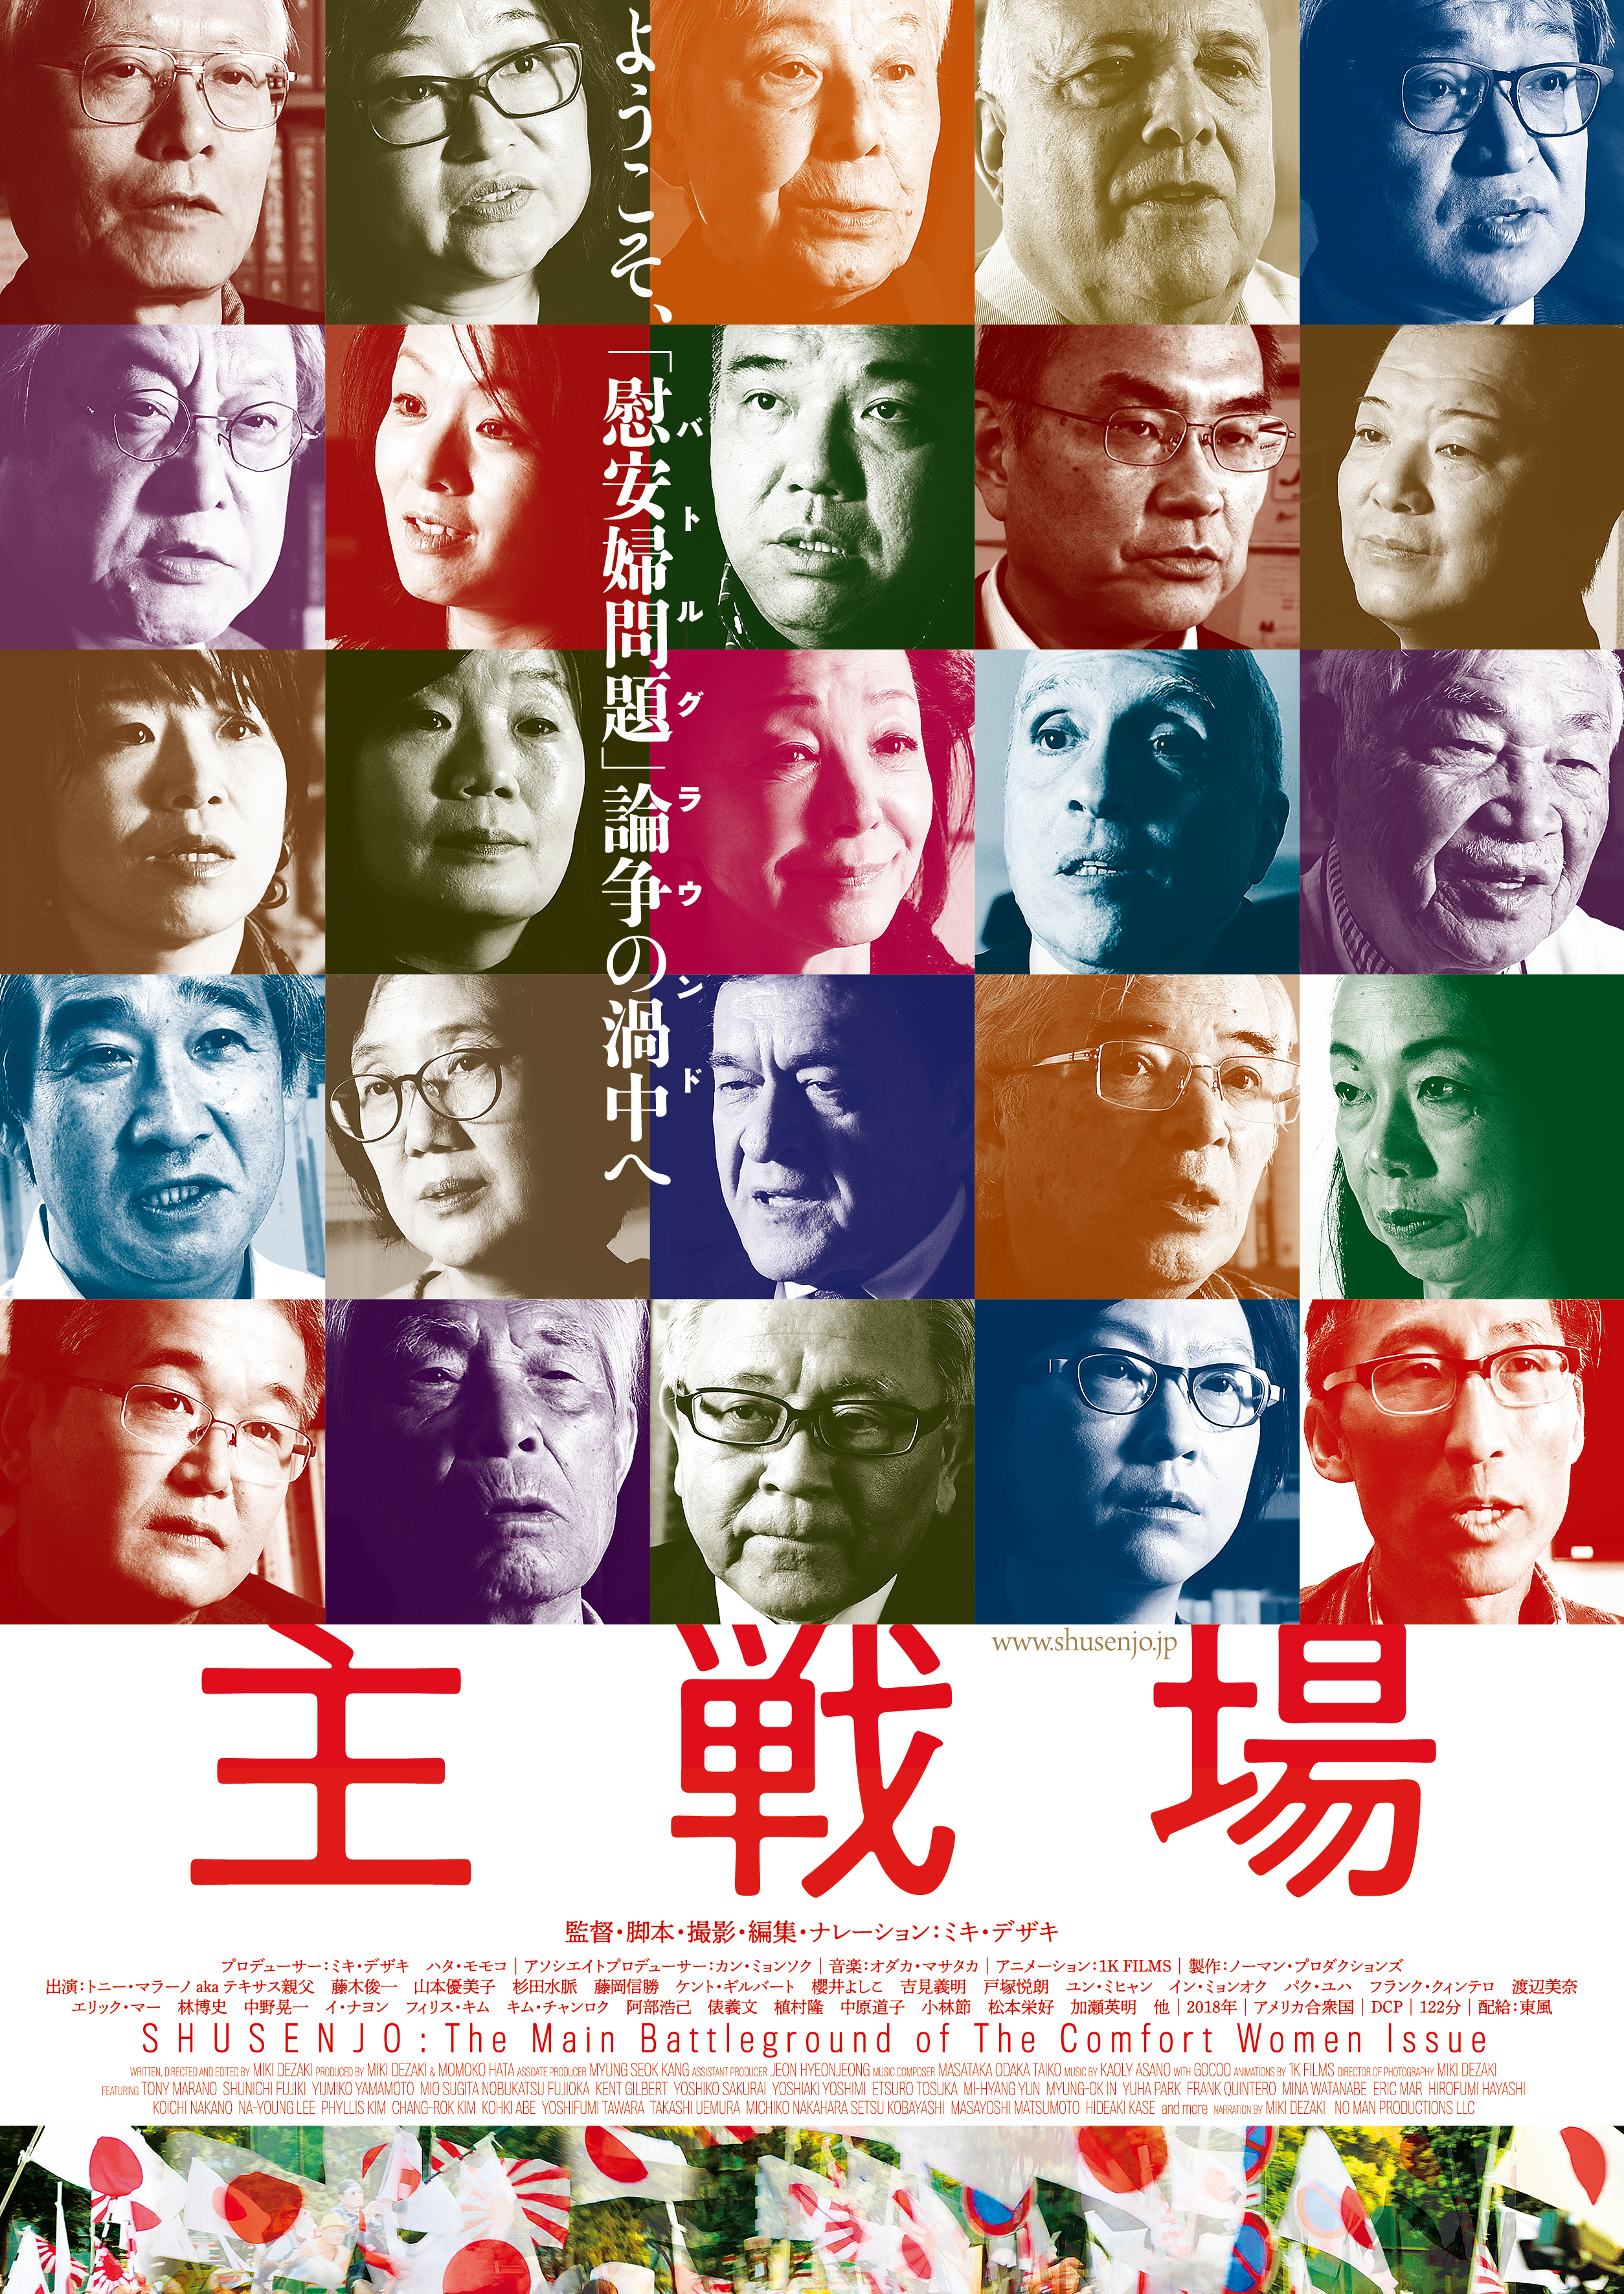 Shusenjo: The Main Battleground of the Comfort Women Issue (2019) Screenshot 1